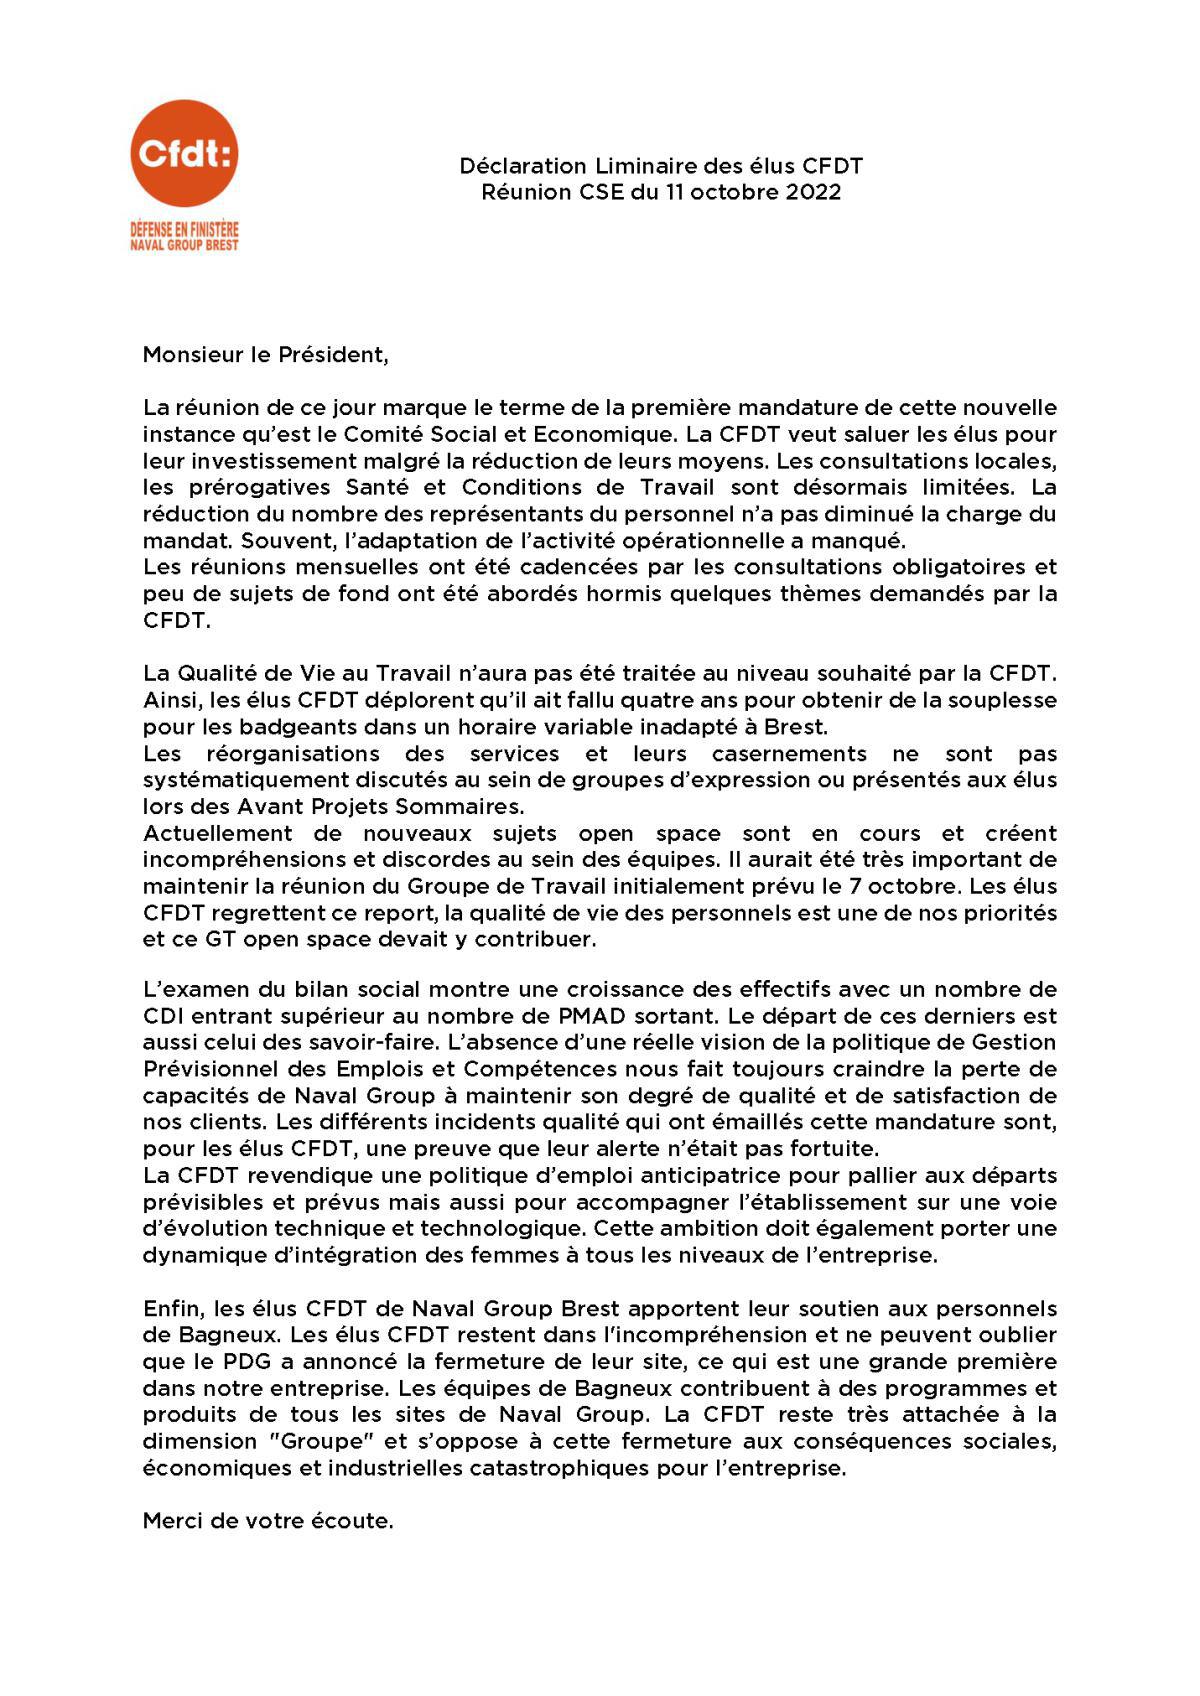 Déclaration liminaire au CSE de Brest du 11 octobre 2022